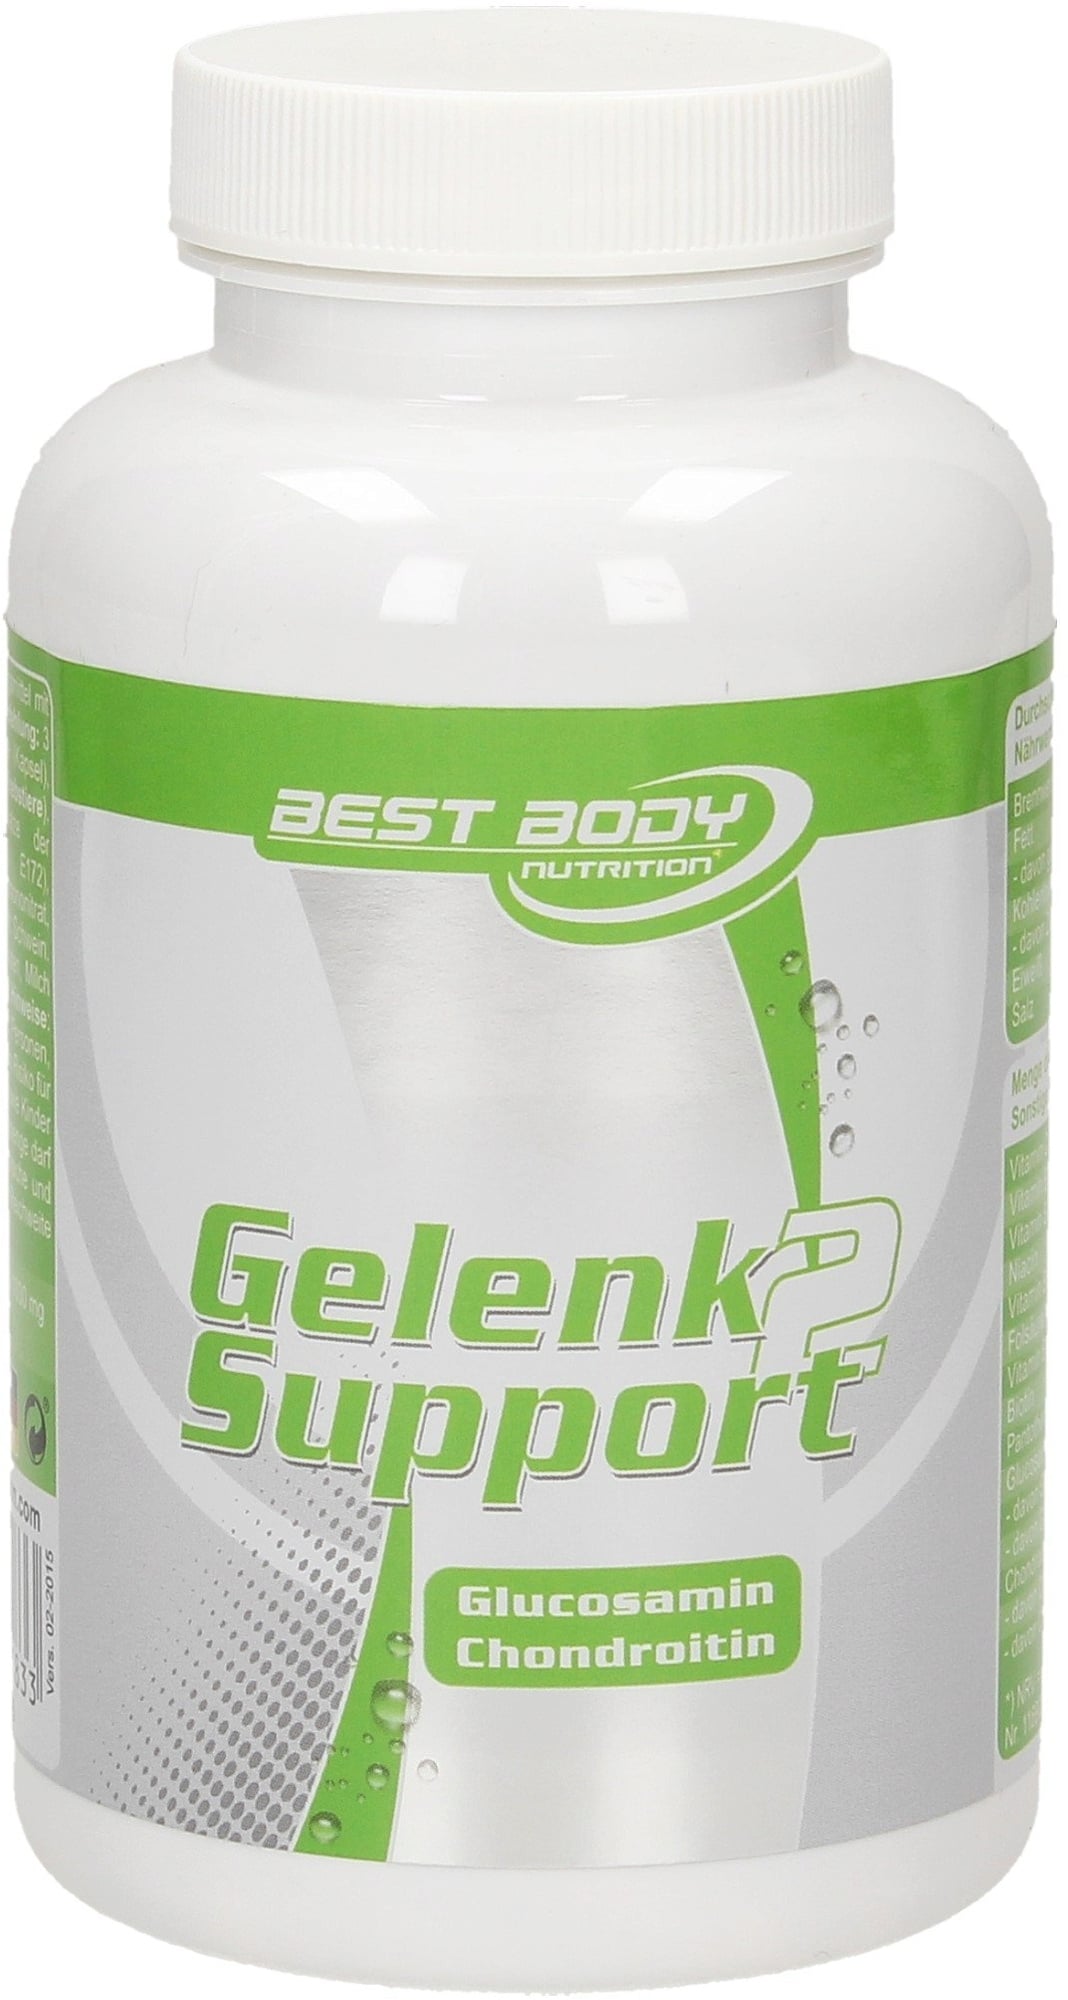 Best Body Nutrition Gelenk Support 2